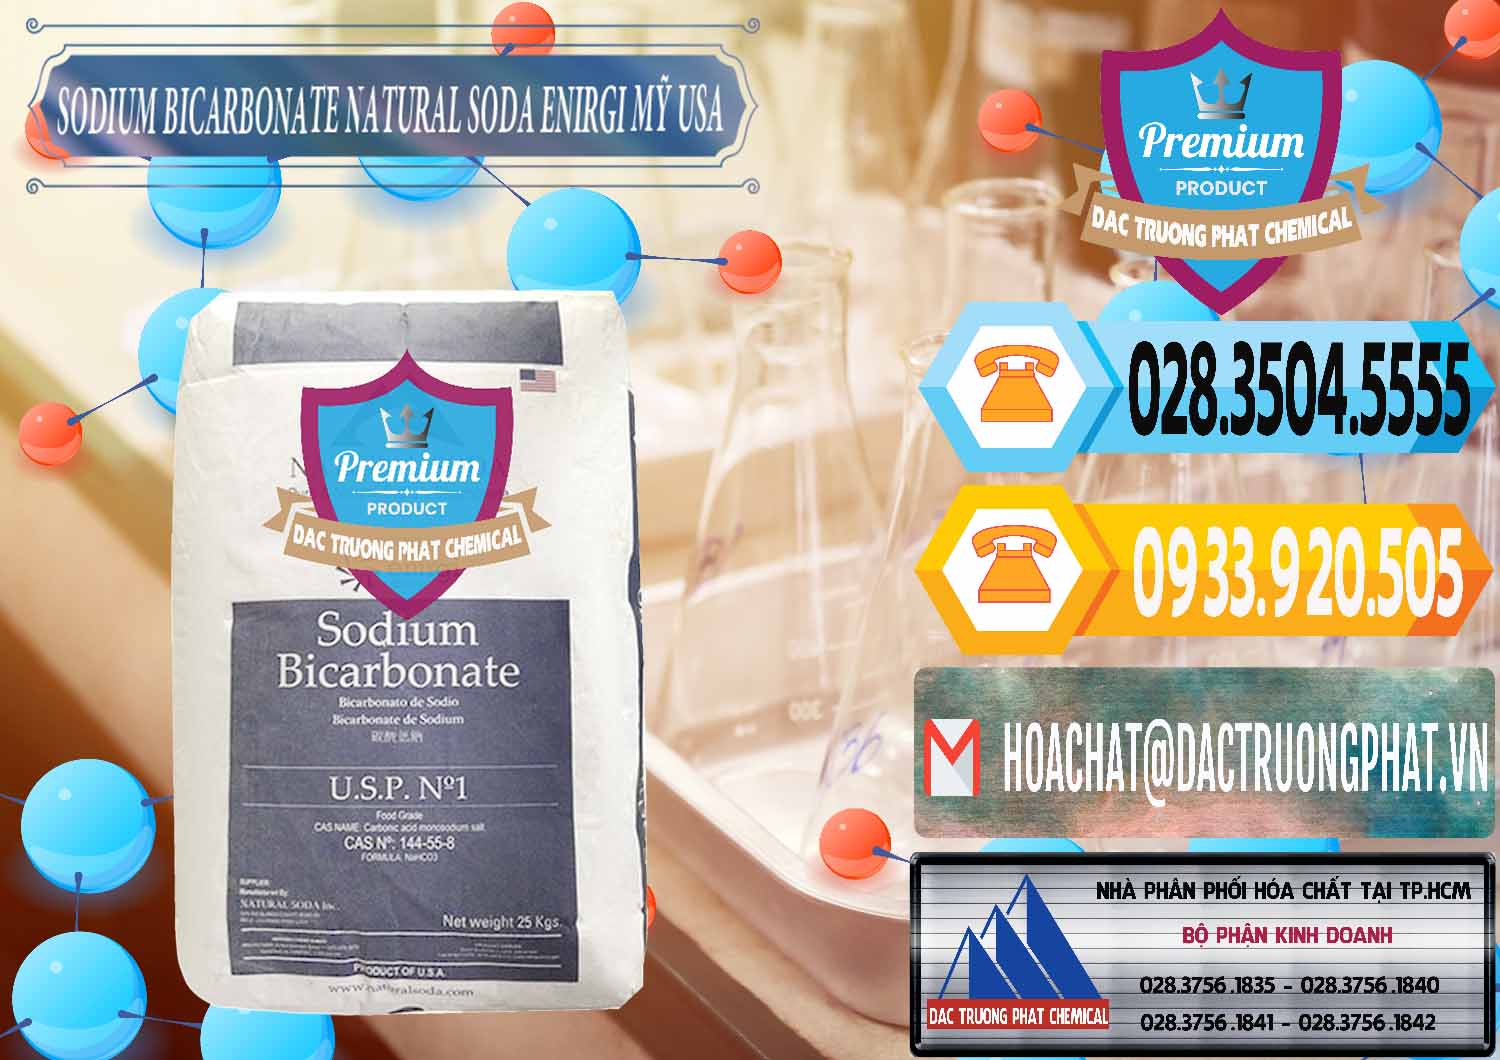 Chuyên phân phối - bán Sodium Bicarbonate – Bicar NaHCO3 Food Grade Natural Soda Enirgi Mỹ USA - 0257 - Nơi chuyên phân phối và nhập khẩu hóa chất tại TP.HCM - hoachattayrua.net